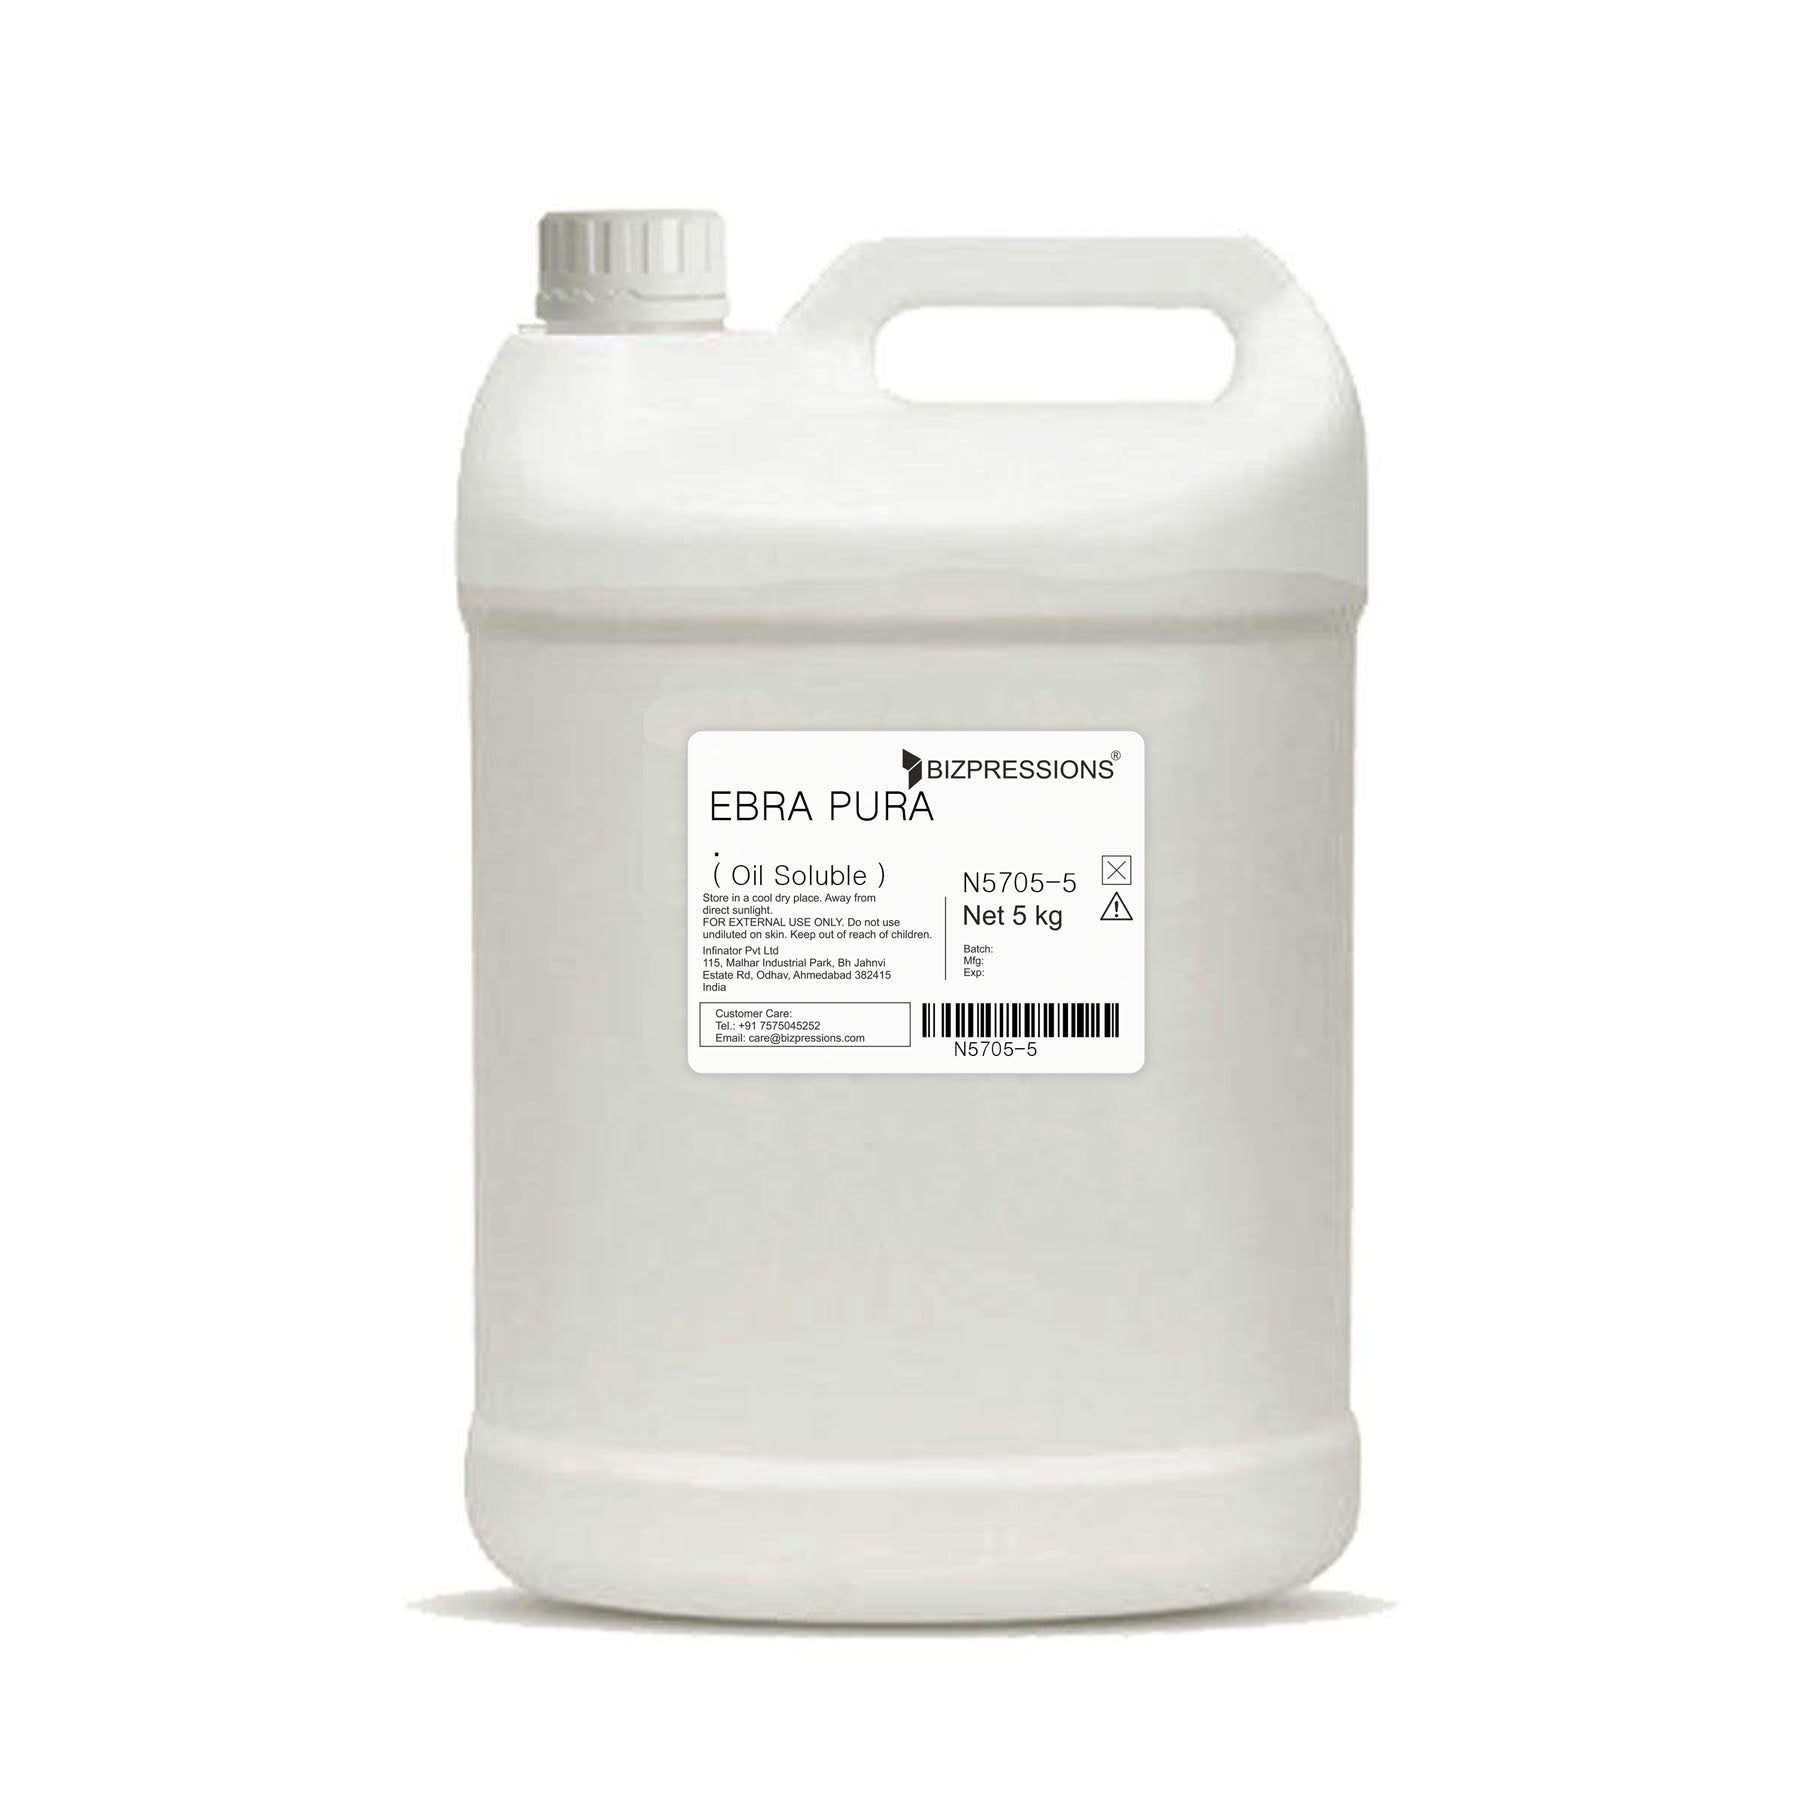 EBRA PURA - Fragrance ( Oil Soluble ) - 5 kg